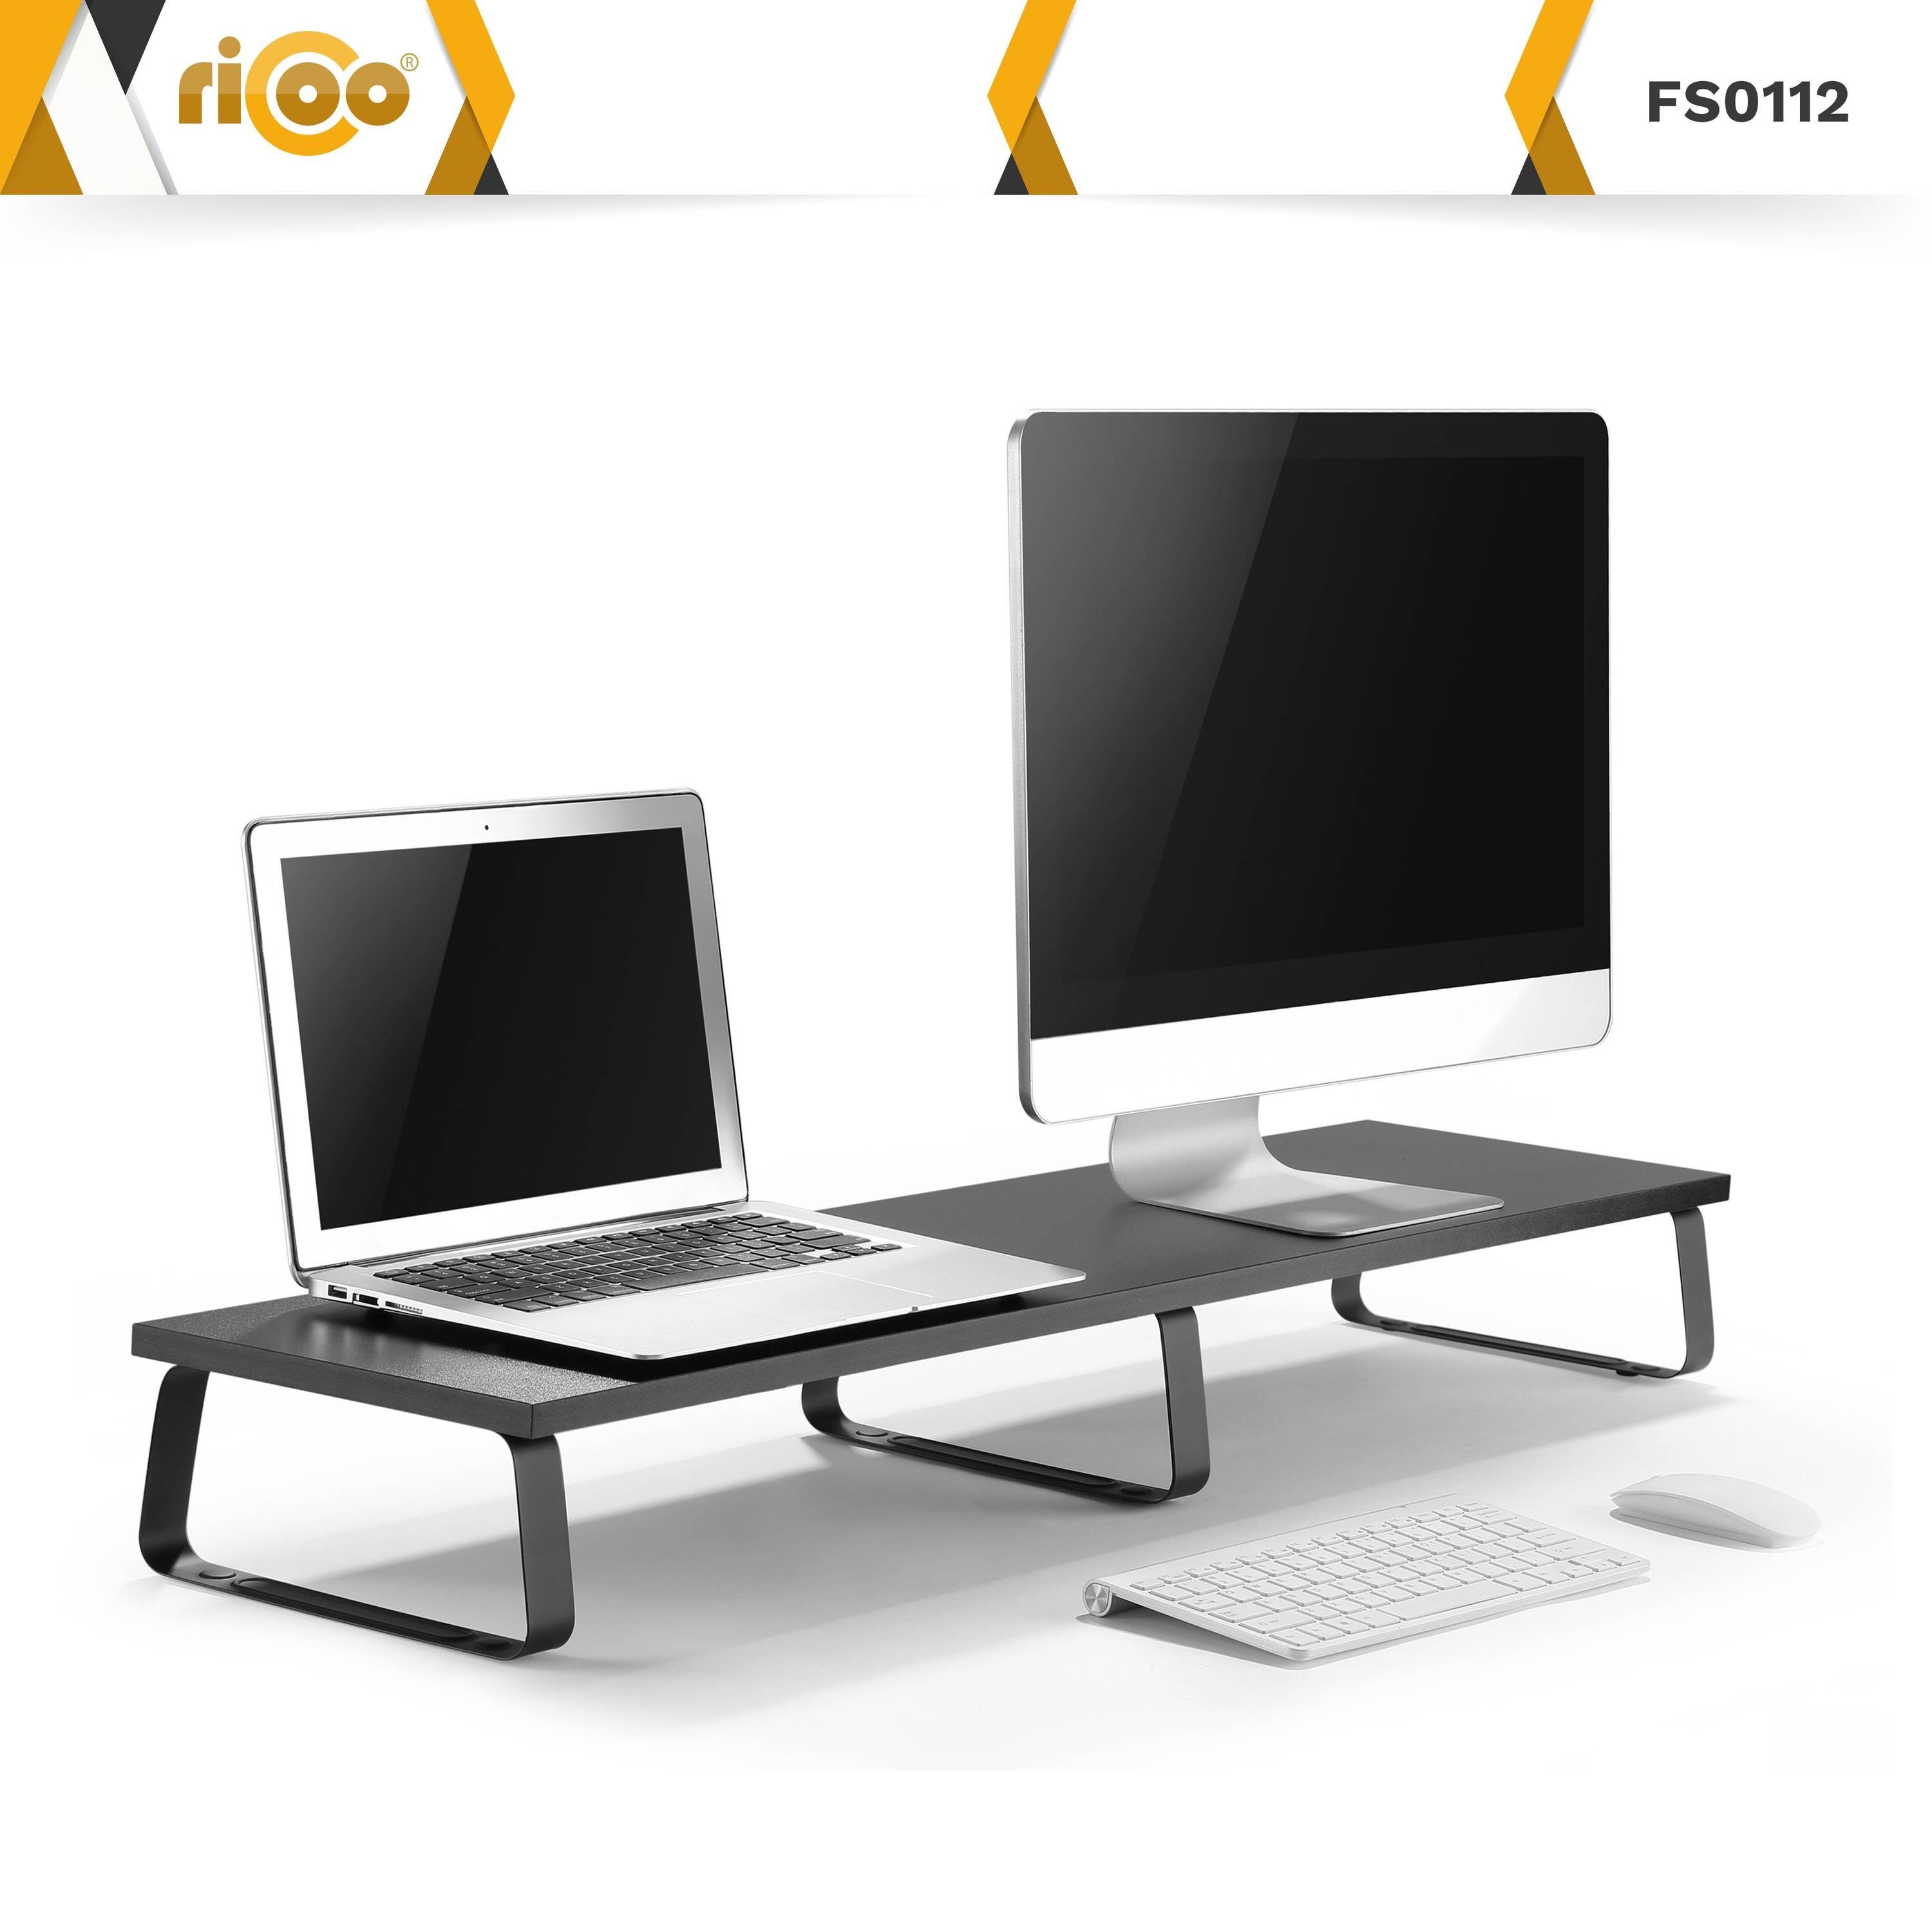 Aufsatz Monitorständer Tisch Schreibtischaufsatz Schreibtisch Monitorerhöhung FS0112, RICOO Bildschirm